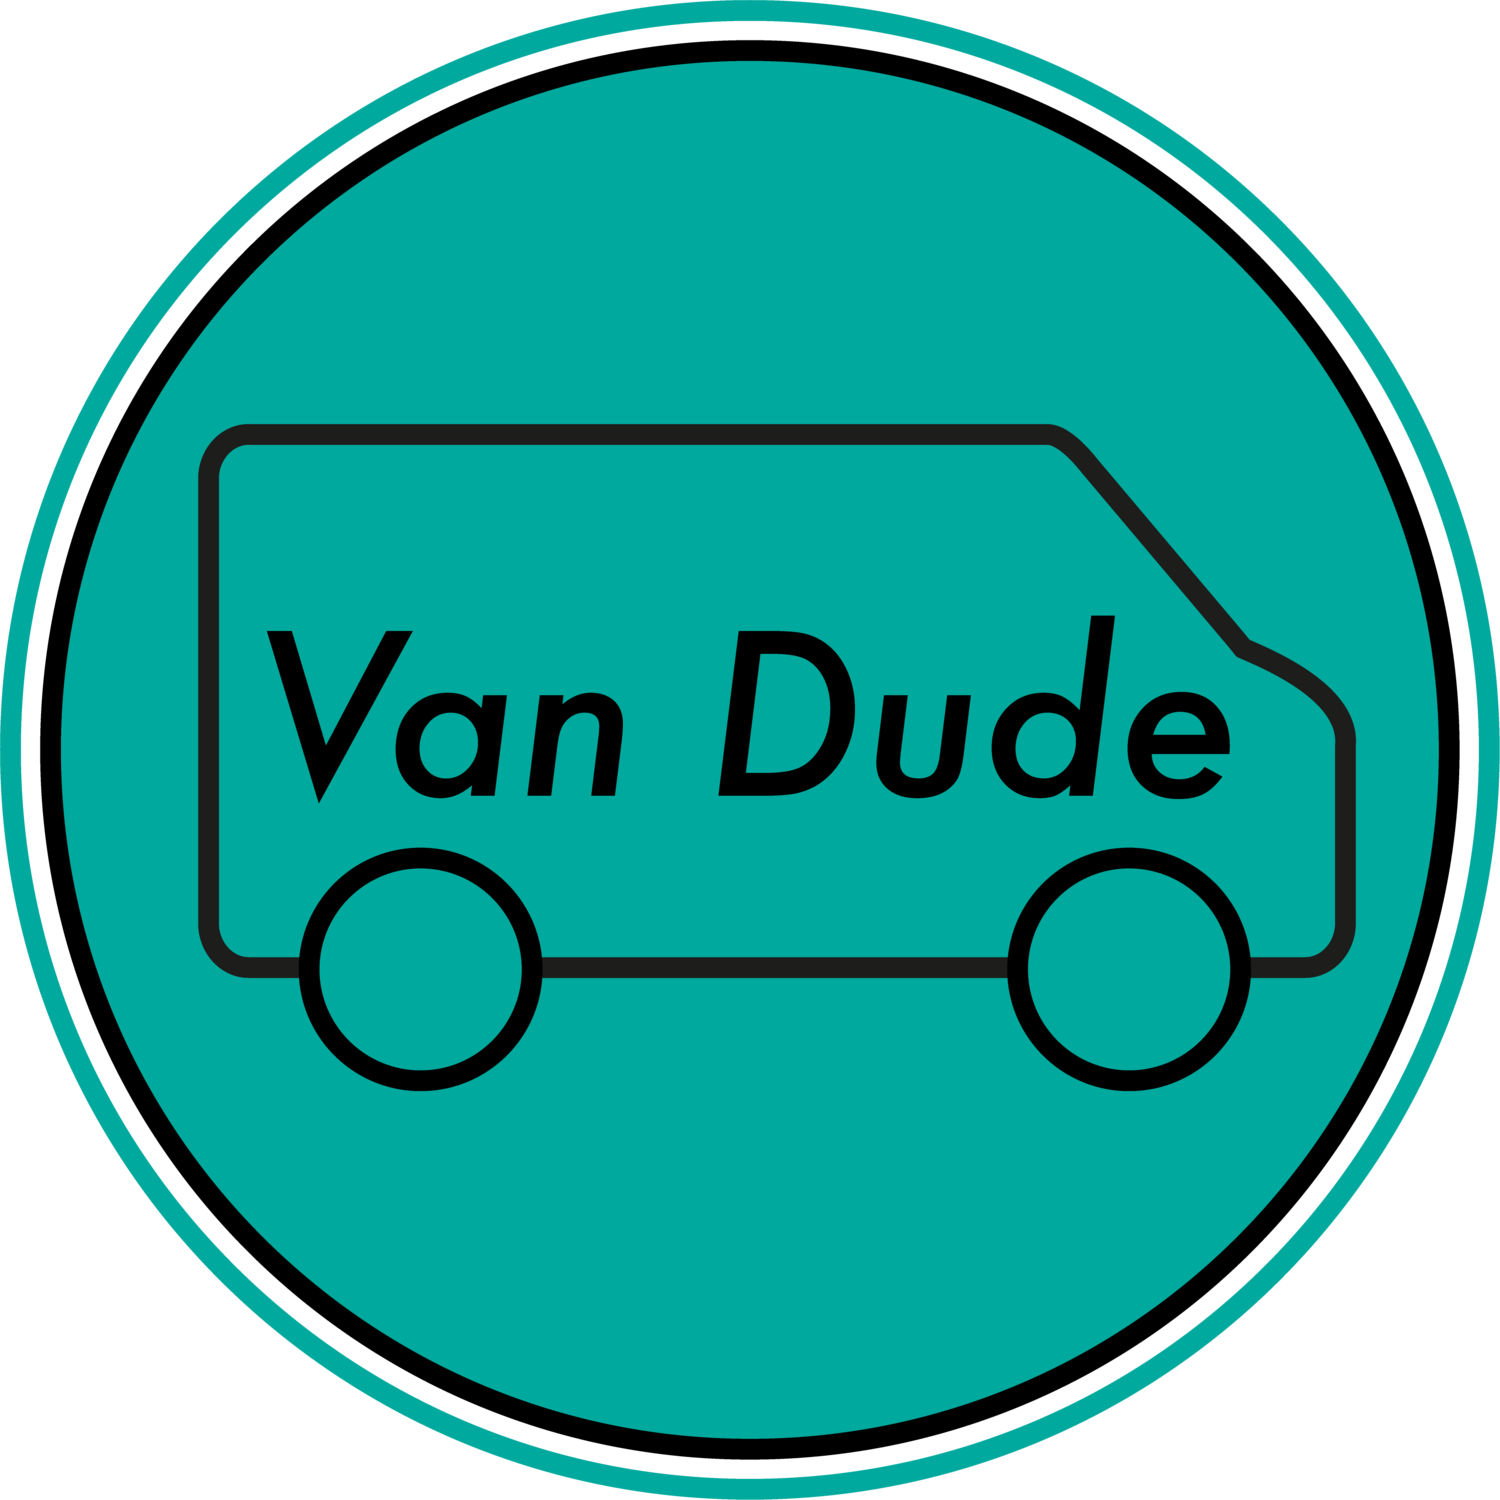 Van Dude